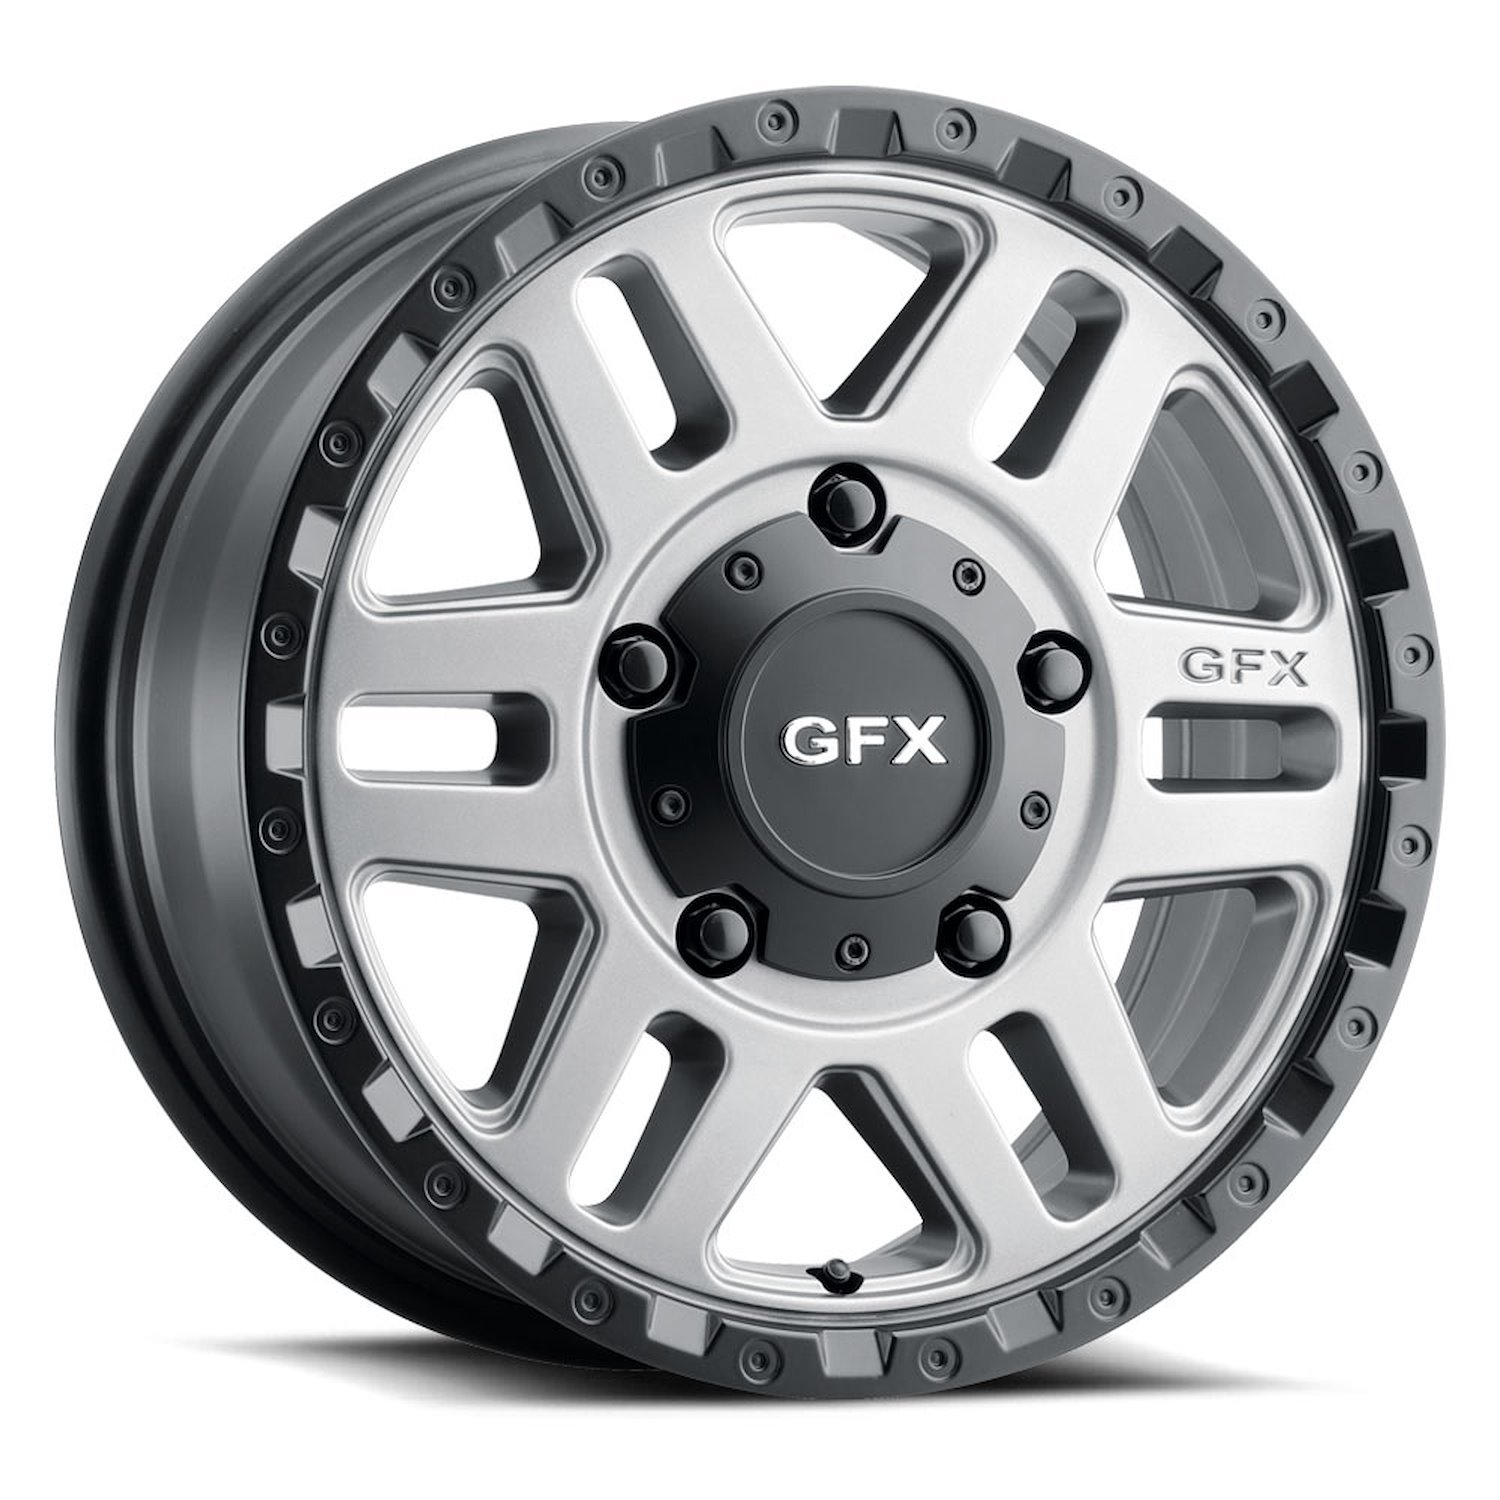 G-FX MV2 665-5130-45 GBR MV2 Wheel [Size: 16" x 6.50"] Finish: Matte Grey w/Matte Black Lip